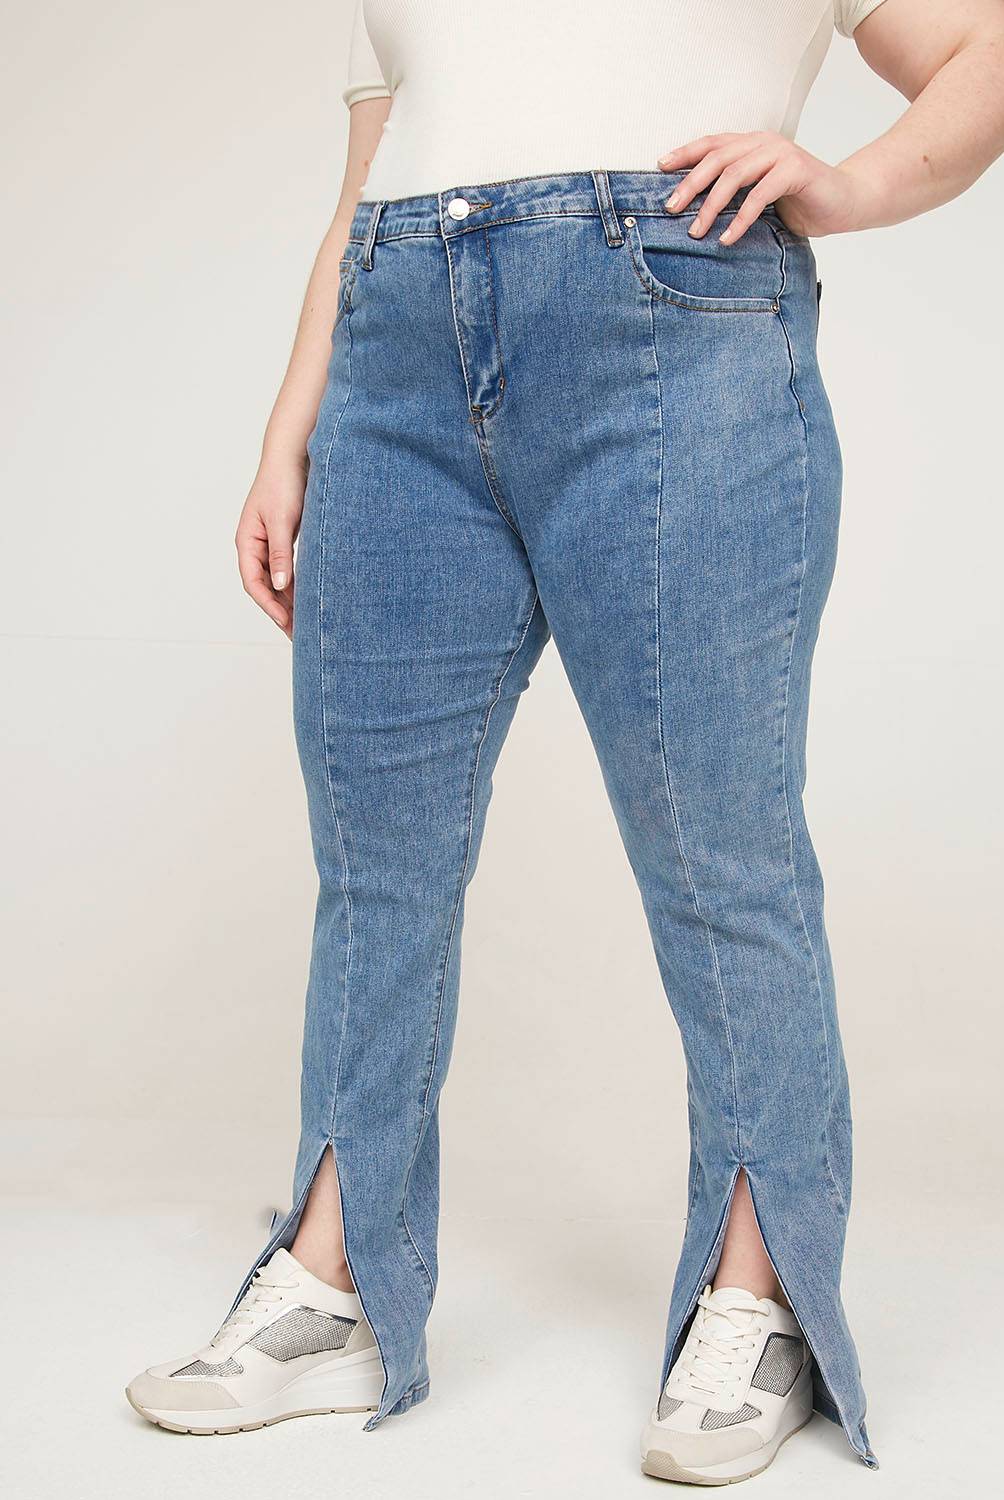 Jeans Mujer: Tiro alto, flare, mom y más